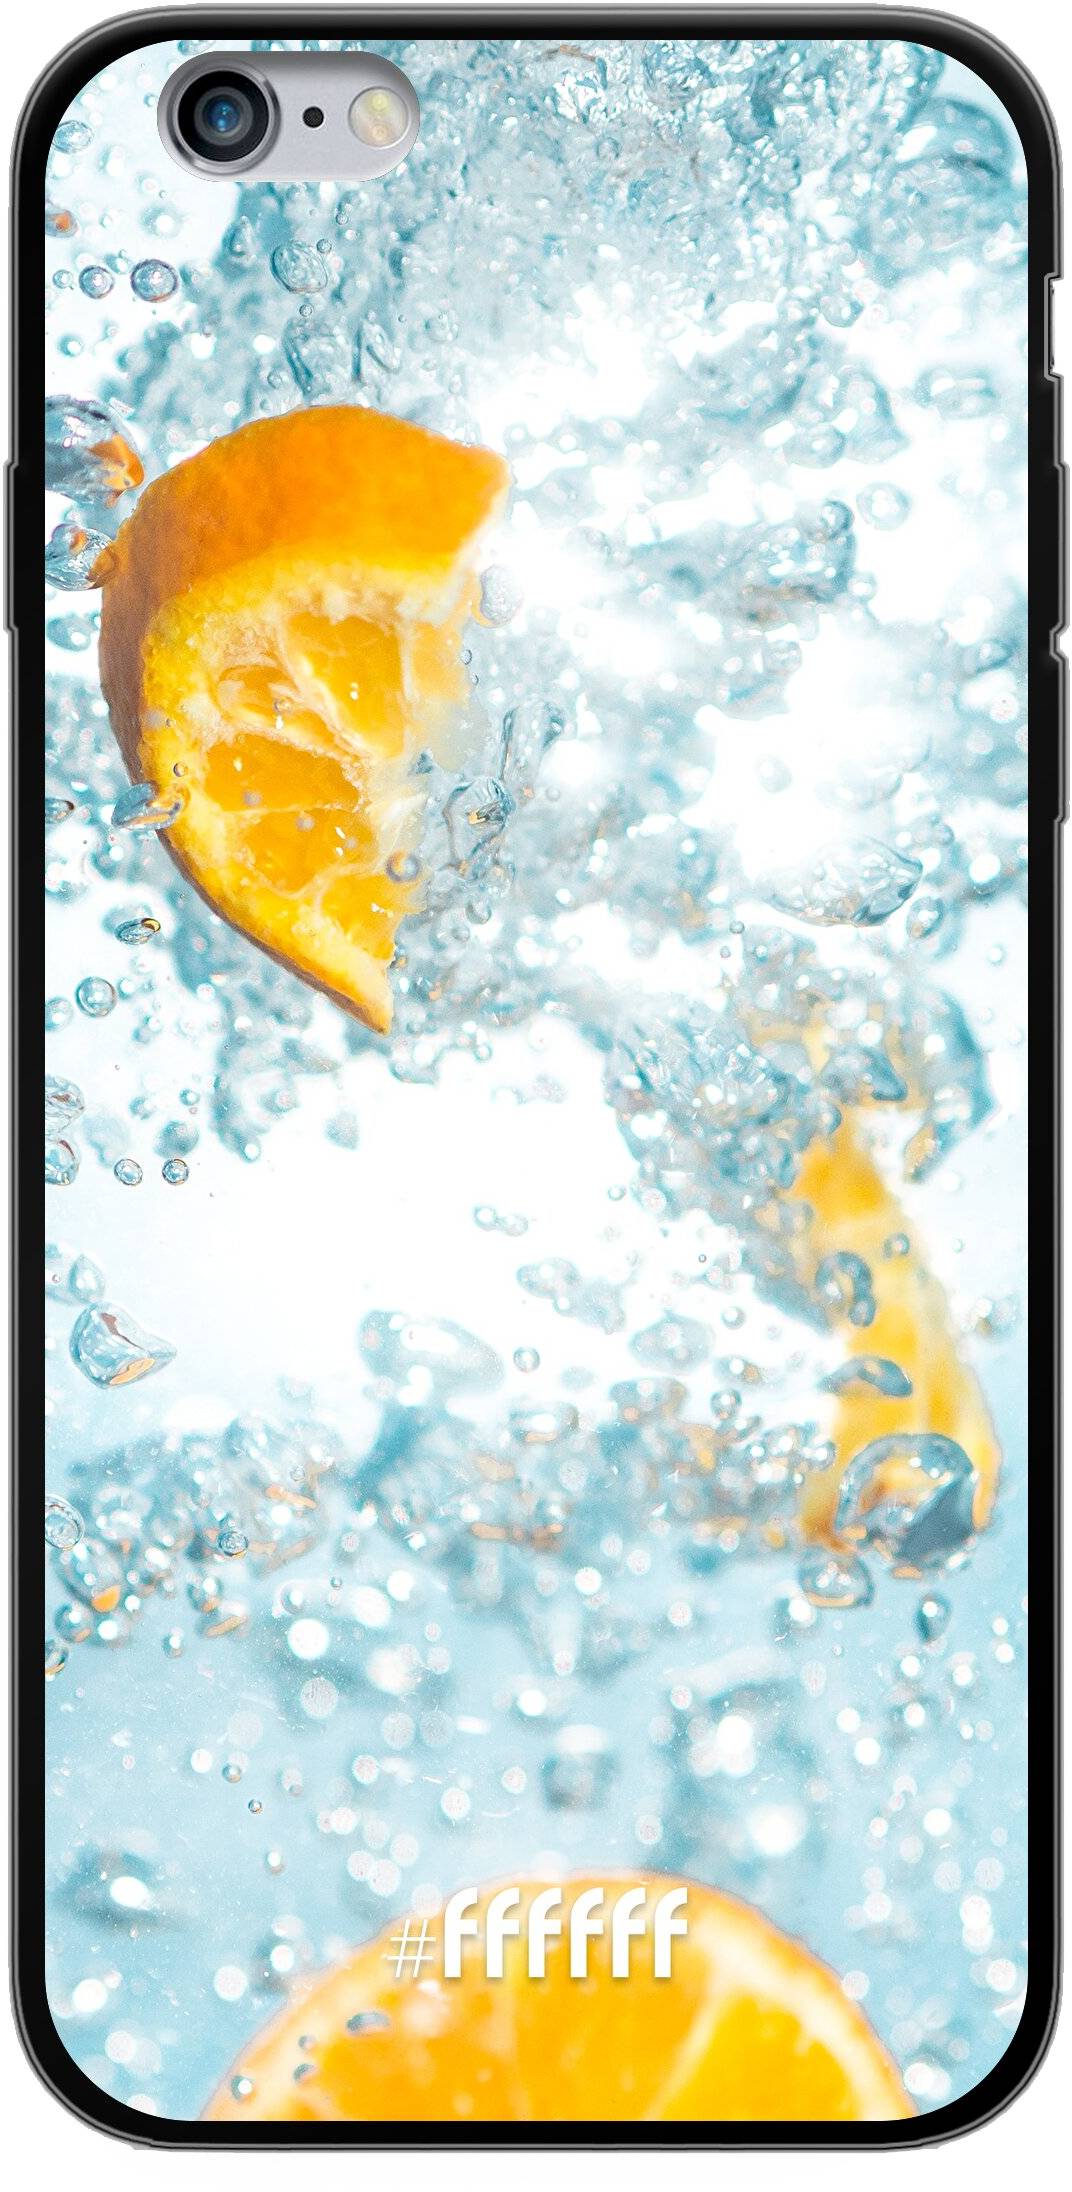 Lemon Fresh iPhone 6